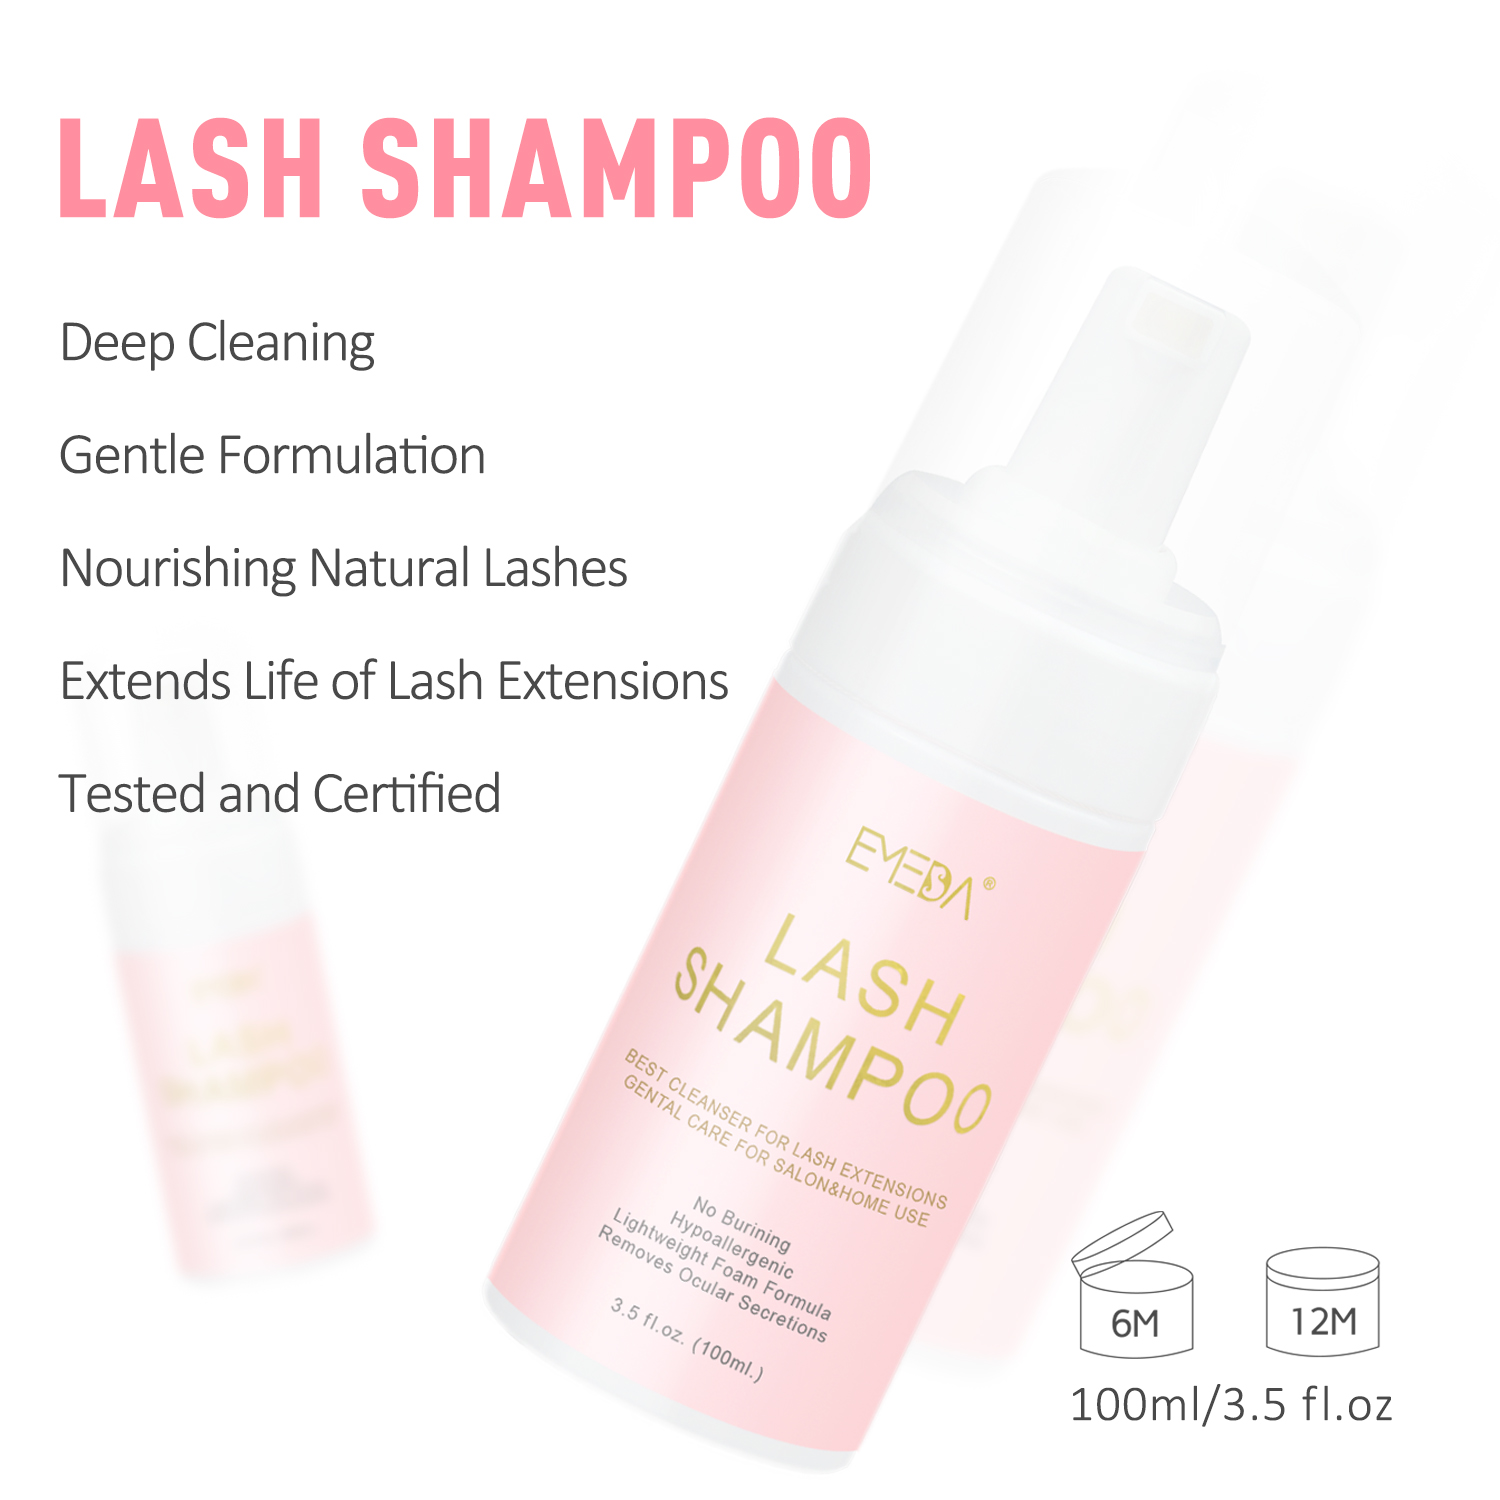 lash shampoo kit01.jpg